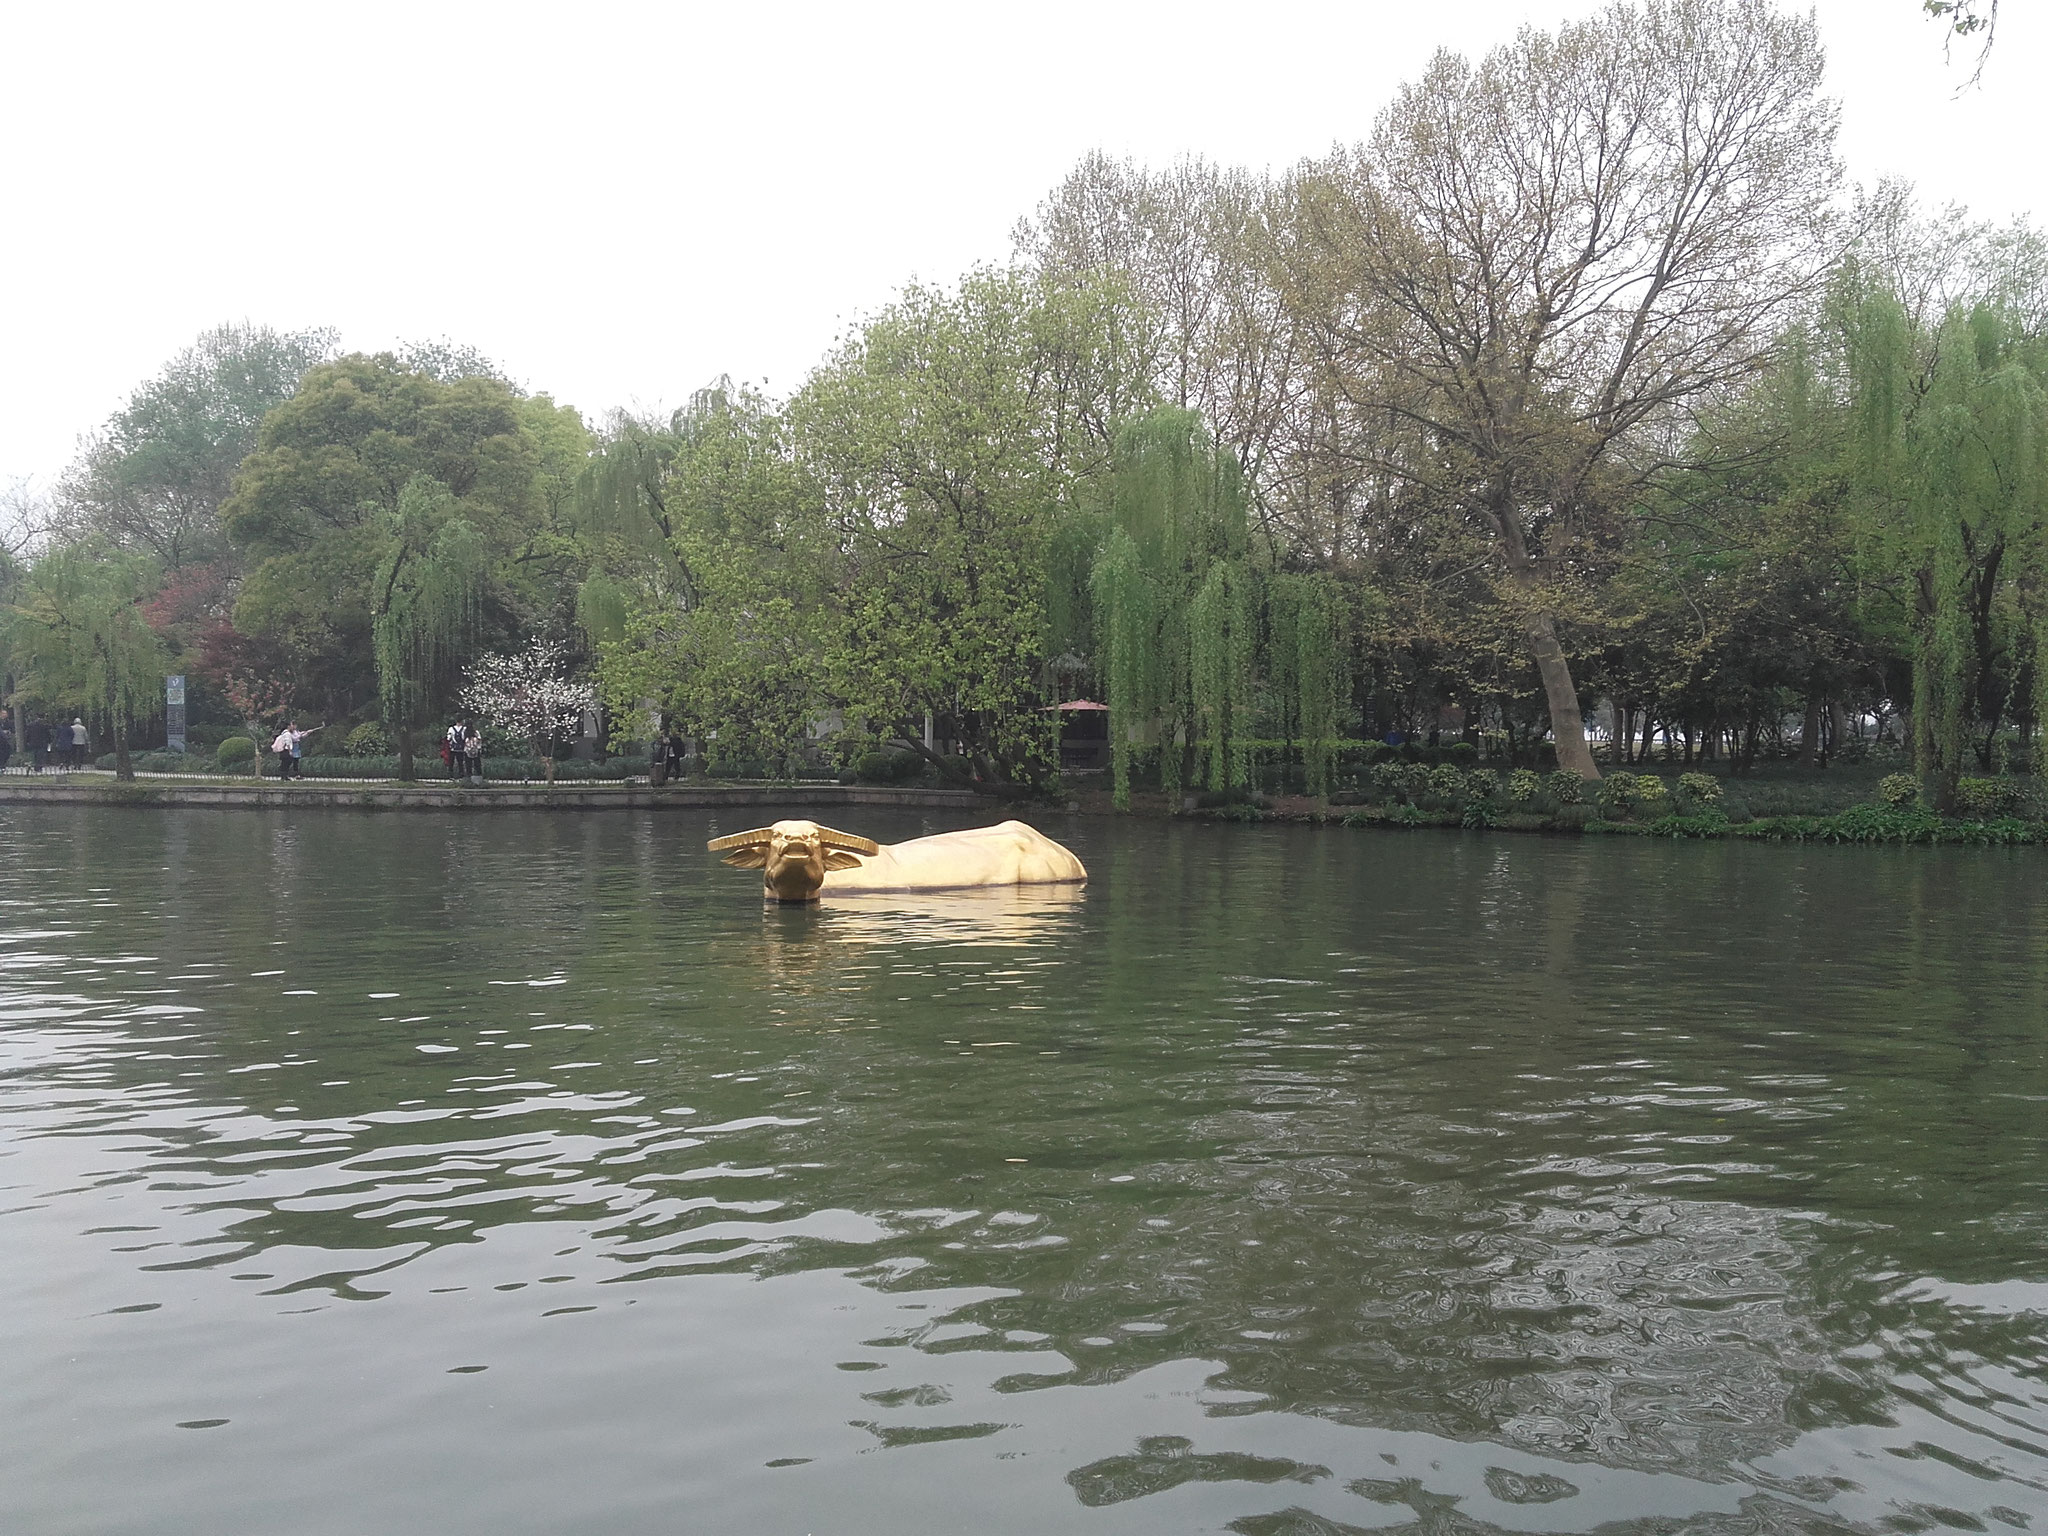 La ville d'Hangzhou a connu une grande période de sécheresse il y a plusieurs centaines d'années. Selon le folklore local, une vache se serait baignée dans le lac et aurait apporté la pluie !